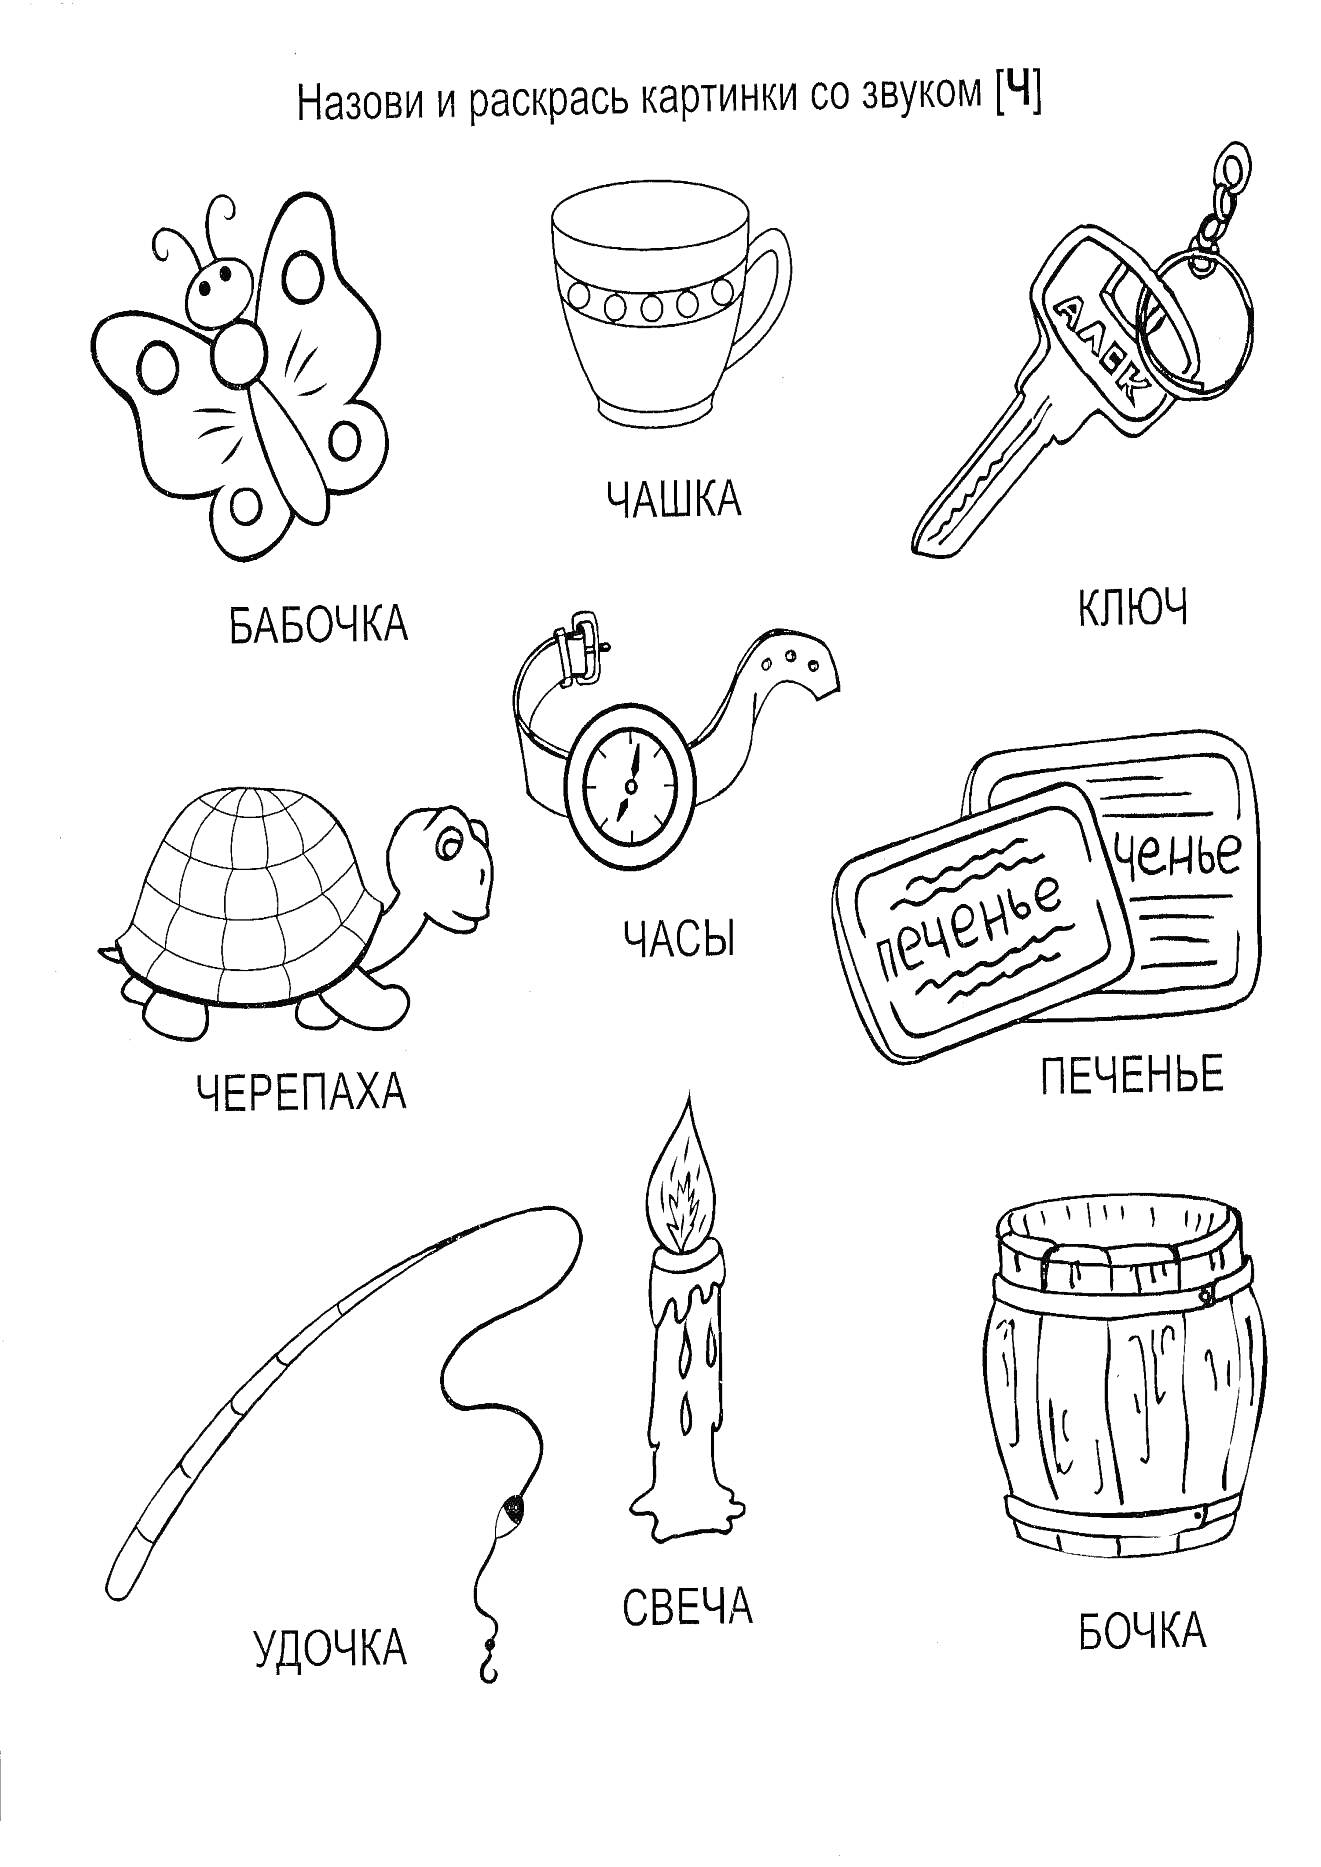 Логопедическая раскраска с элементами: бабочка, чашка, ключ, черепаха, часы, печенье, удочка, свеча, бочка